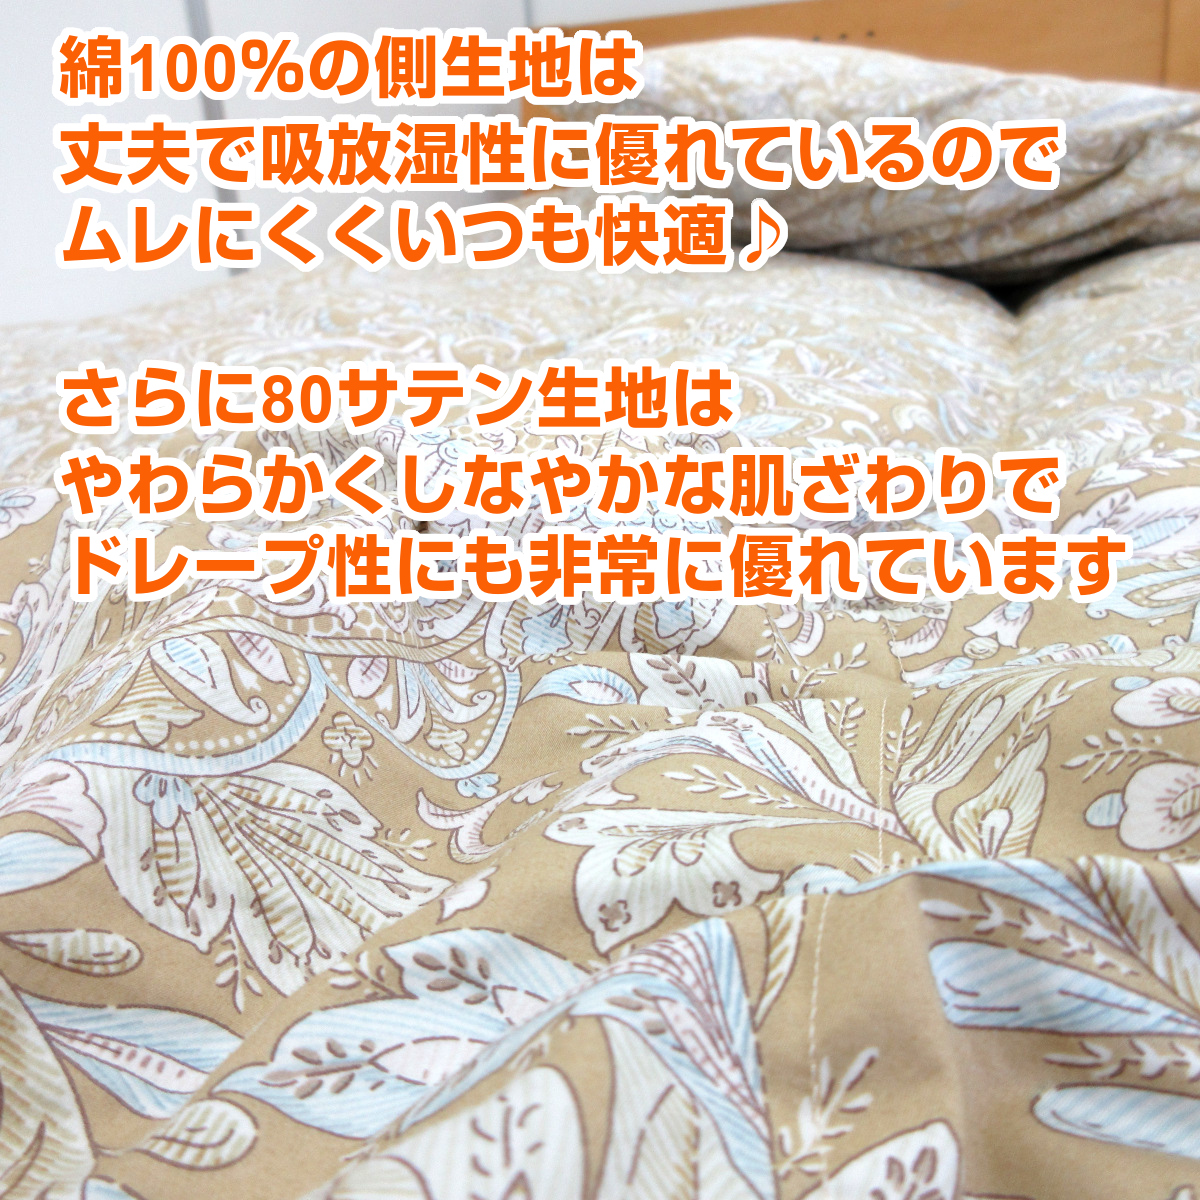 110-837>日本製 増量タイプ ハンガリー産ホワイトダウン90% 羽毛布団